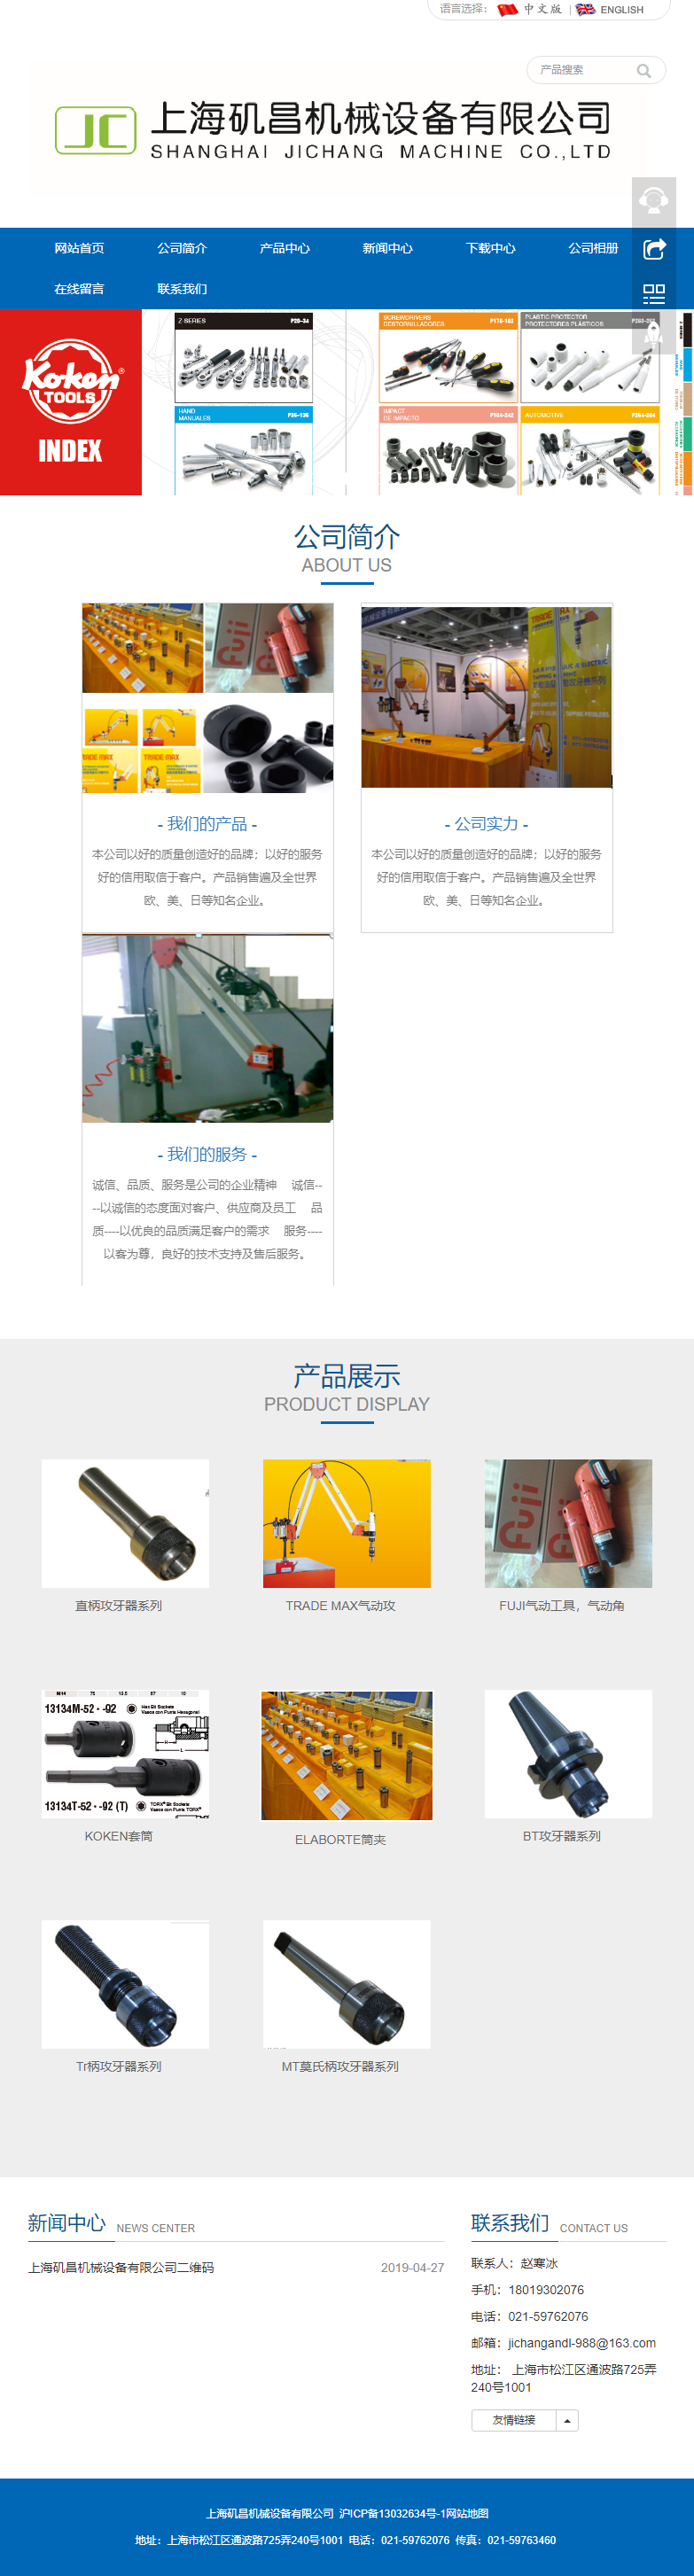 上海矶昌机械设备有限公司网站案例